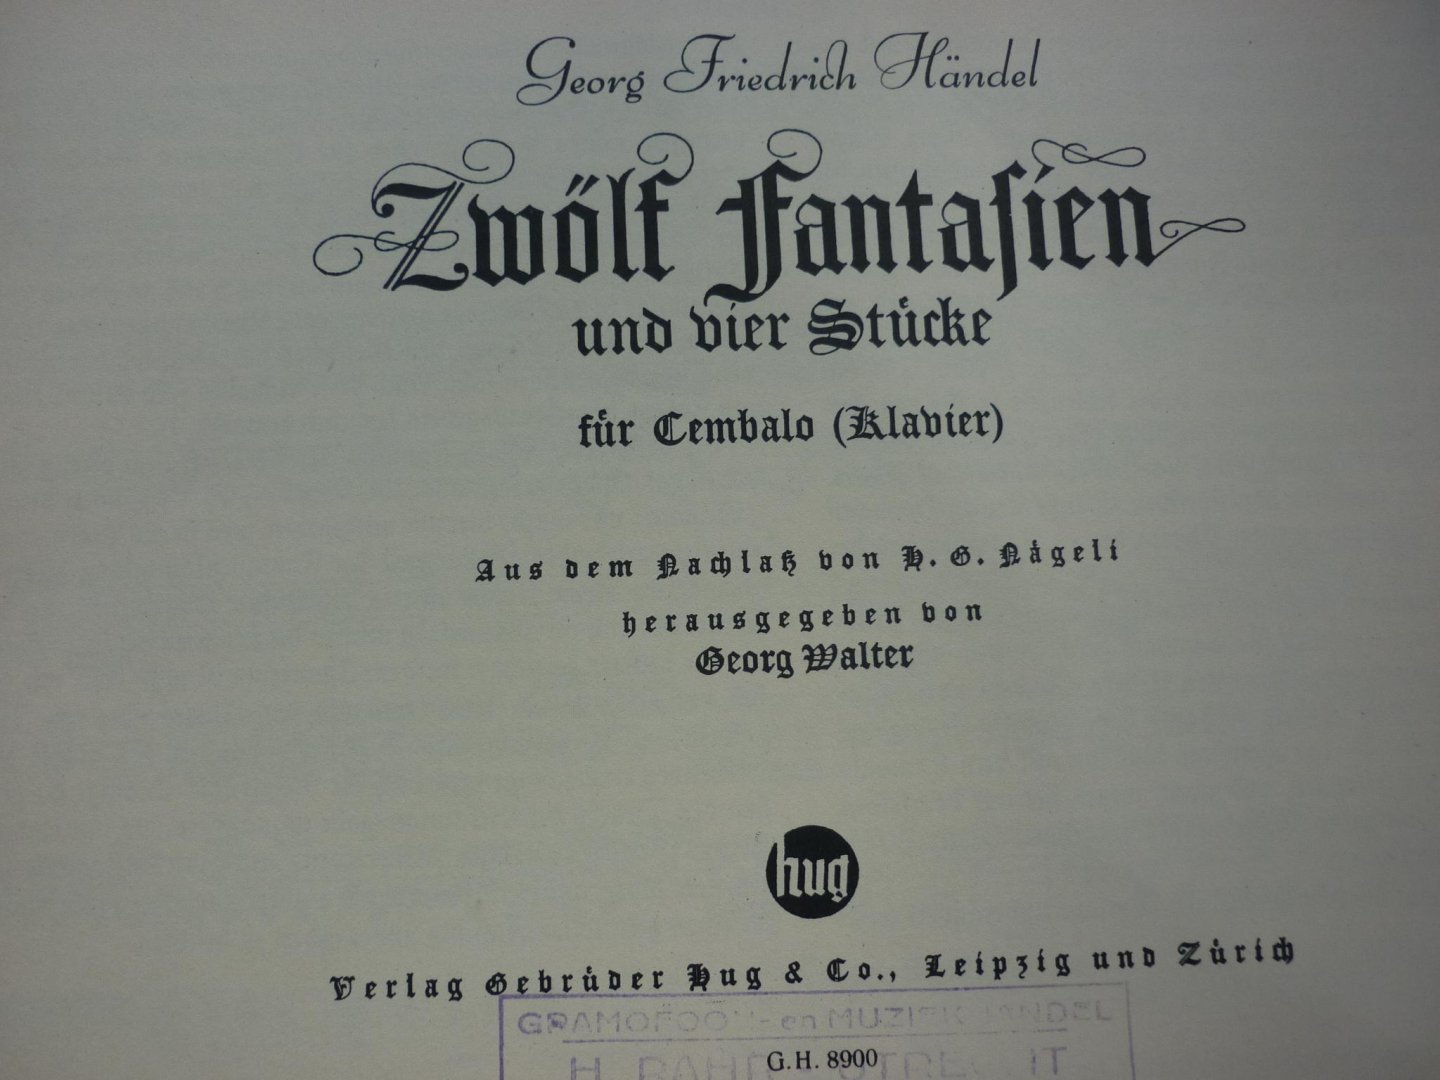 Handel; Georg Friedrich (1685-1759) - Zwölf Fantasien und vier Stücke für Cembalo (Klavier)